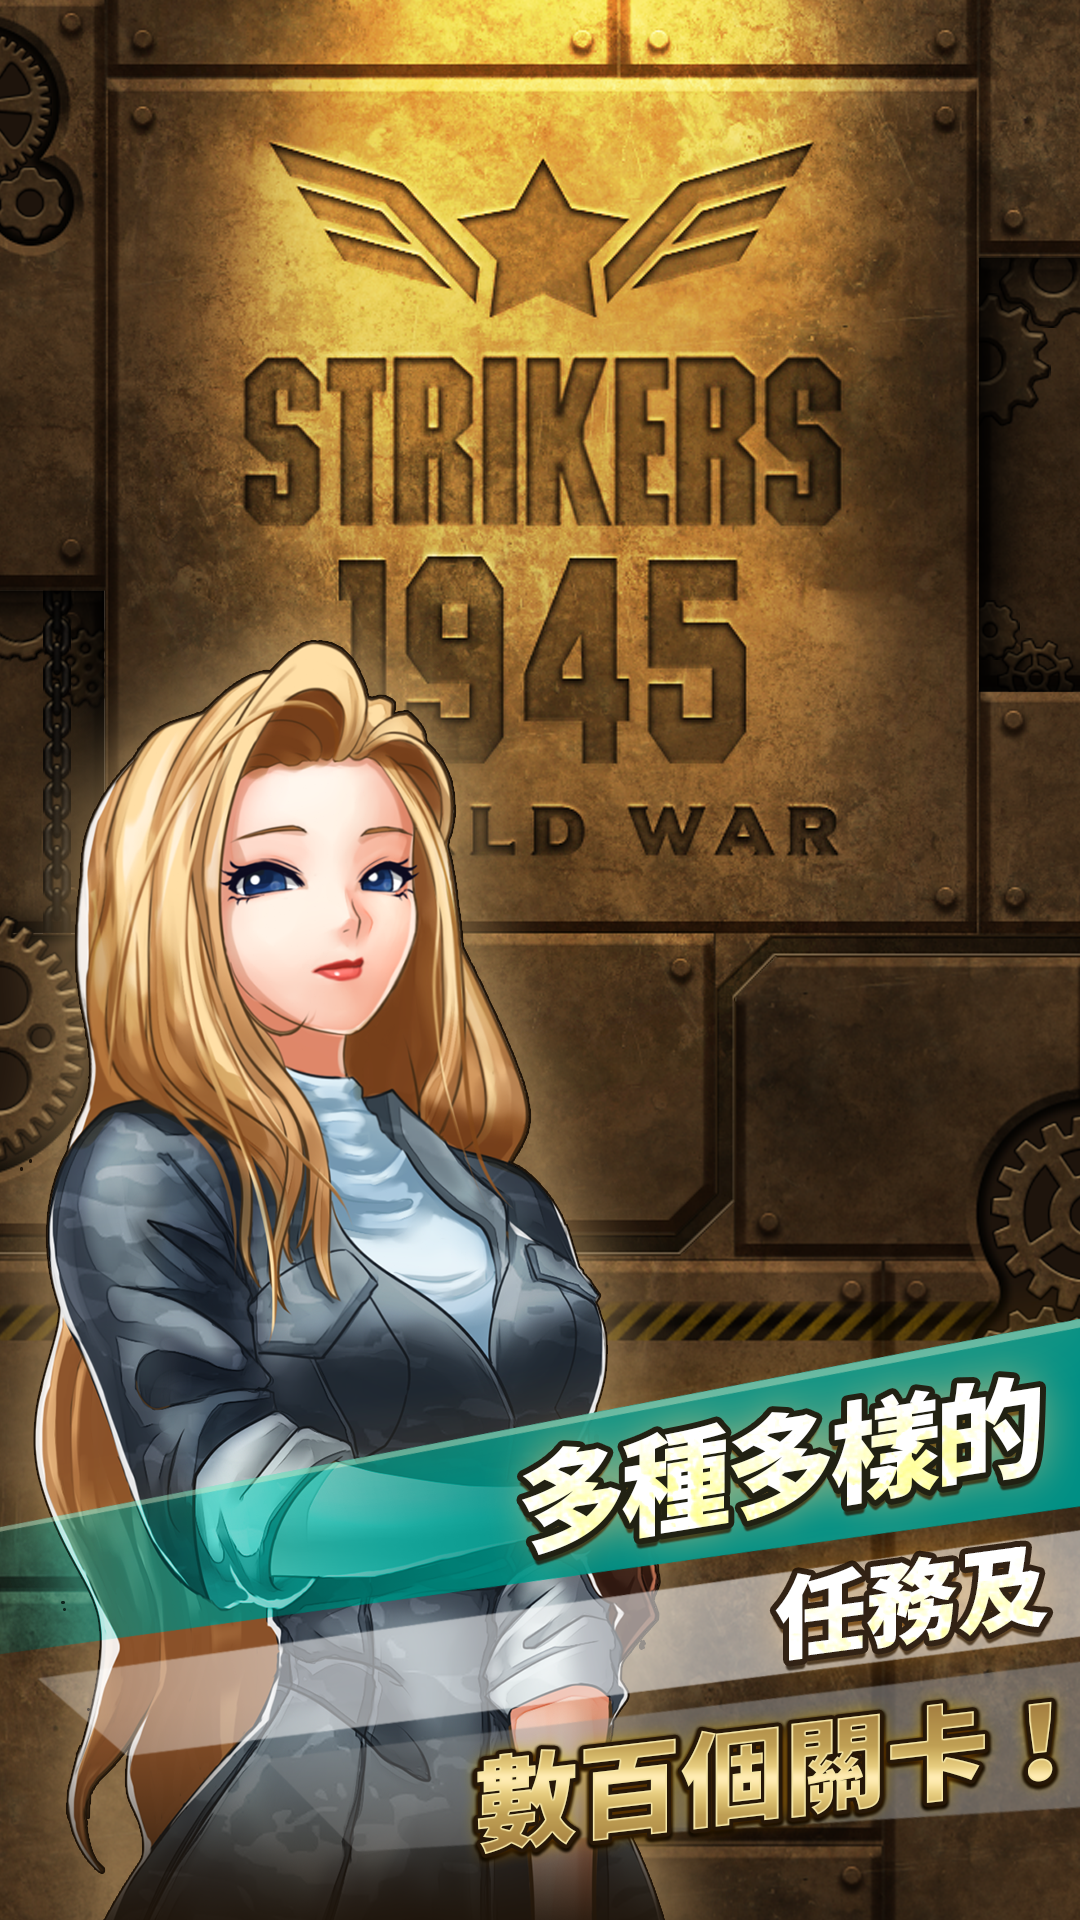 STRIKERS 1945 World War遊戲截圖